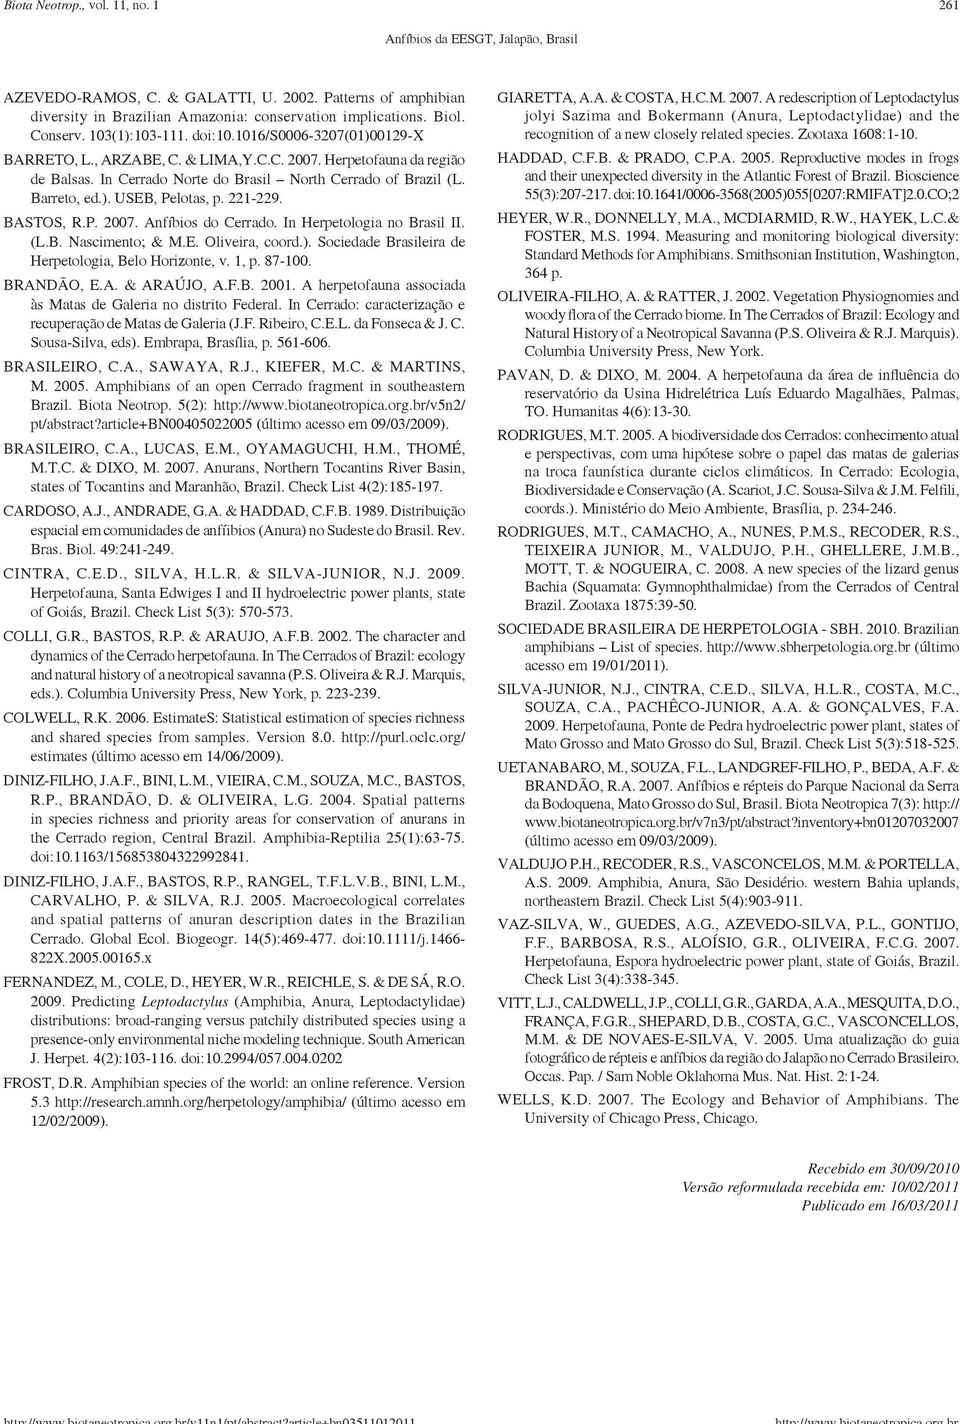 Barreto, ed.). USEB, Pelotas, p. 221-229. BASTOS, R.P. 2007. Anfíbios do Cerrado. In Herpetologia no Brasil II. (L.B. Nascimento; & M.E. Oliveira, coord.). Sociedade Brasileira de Herpetologia, Belo Horizonte, v.